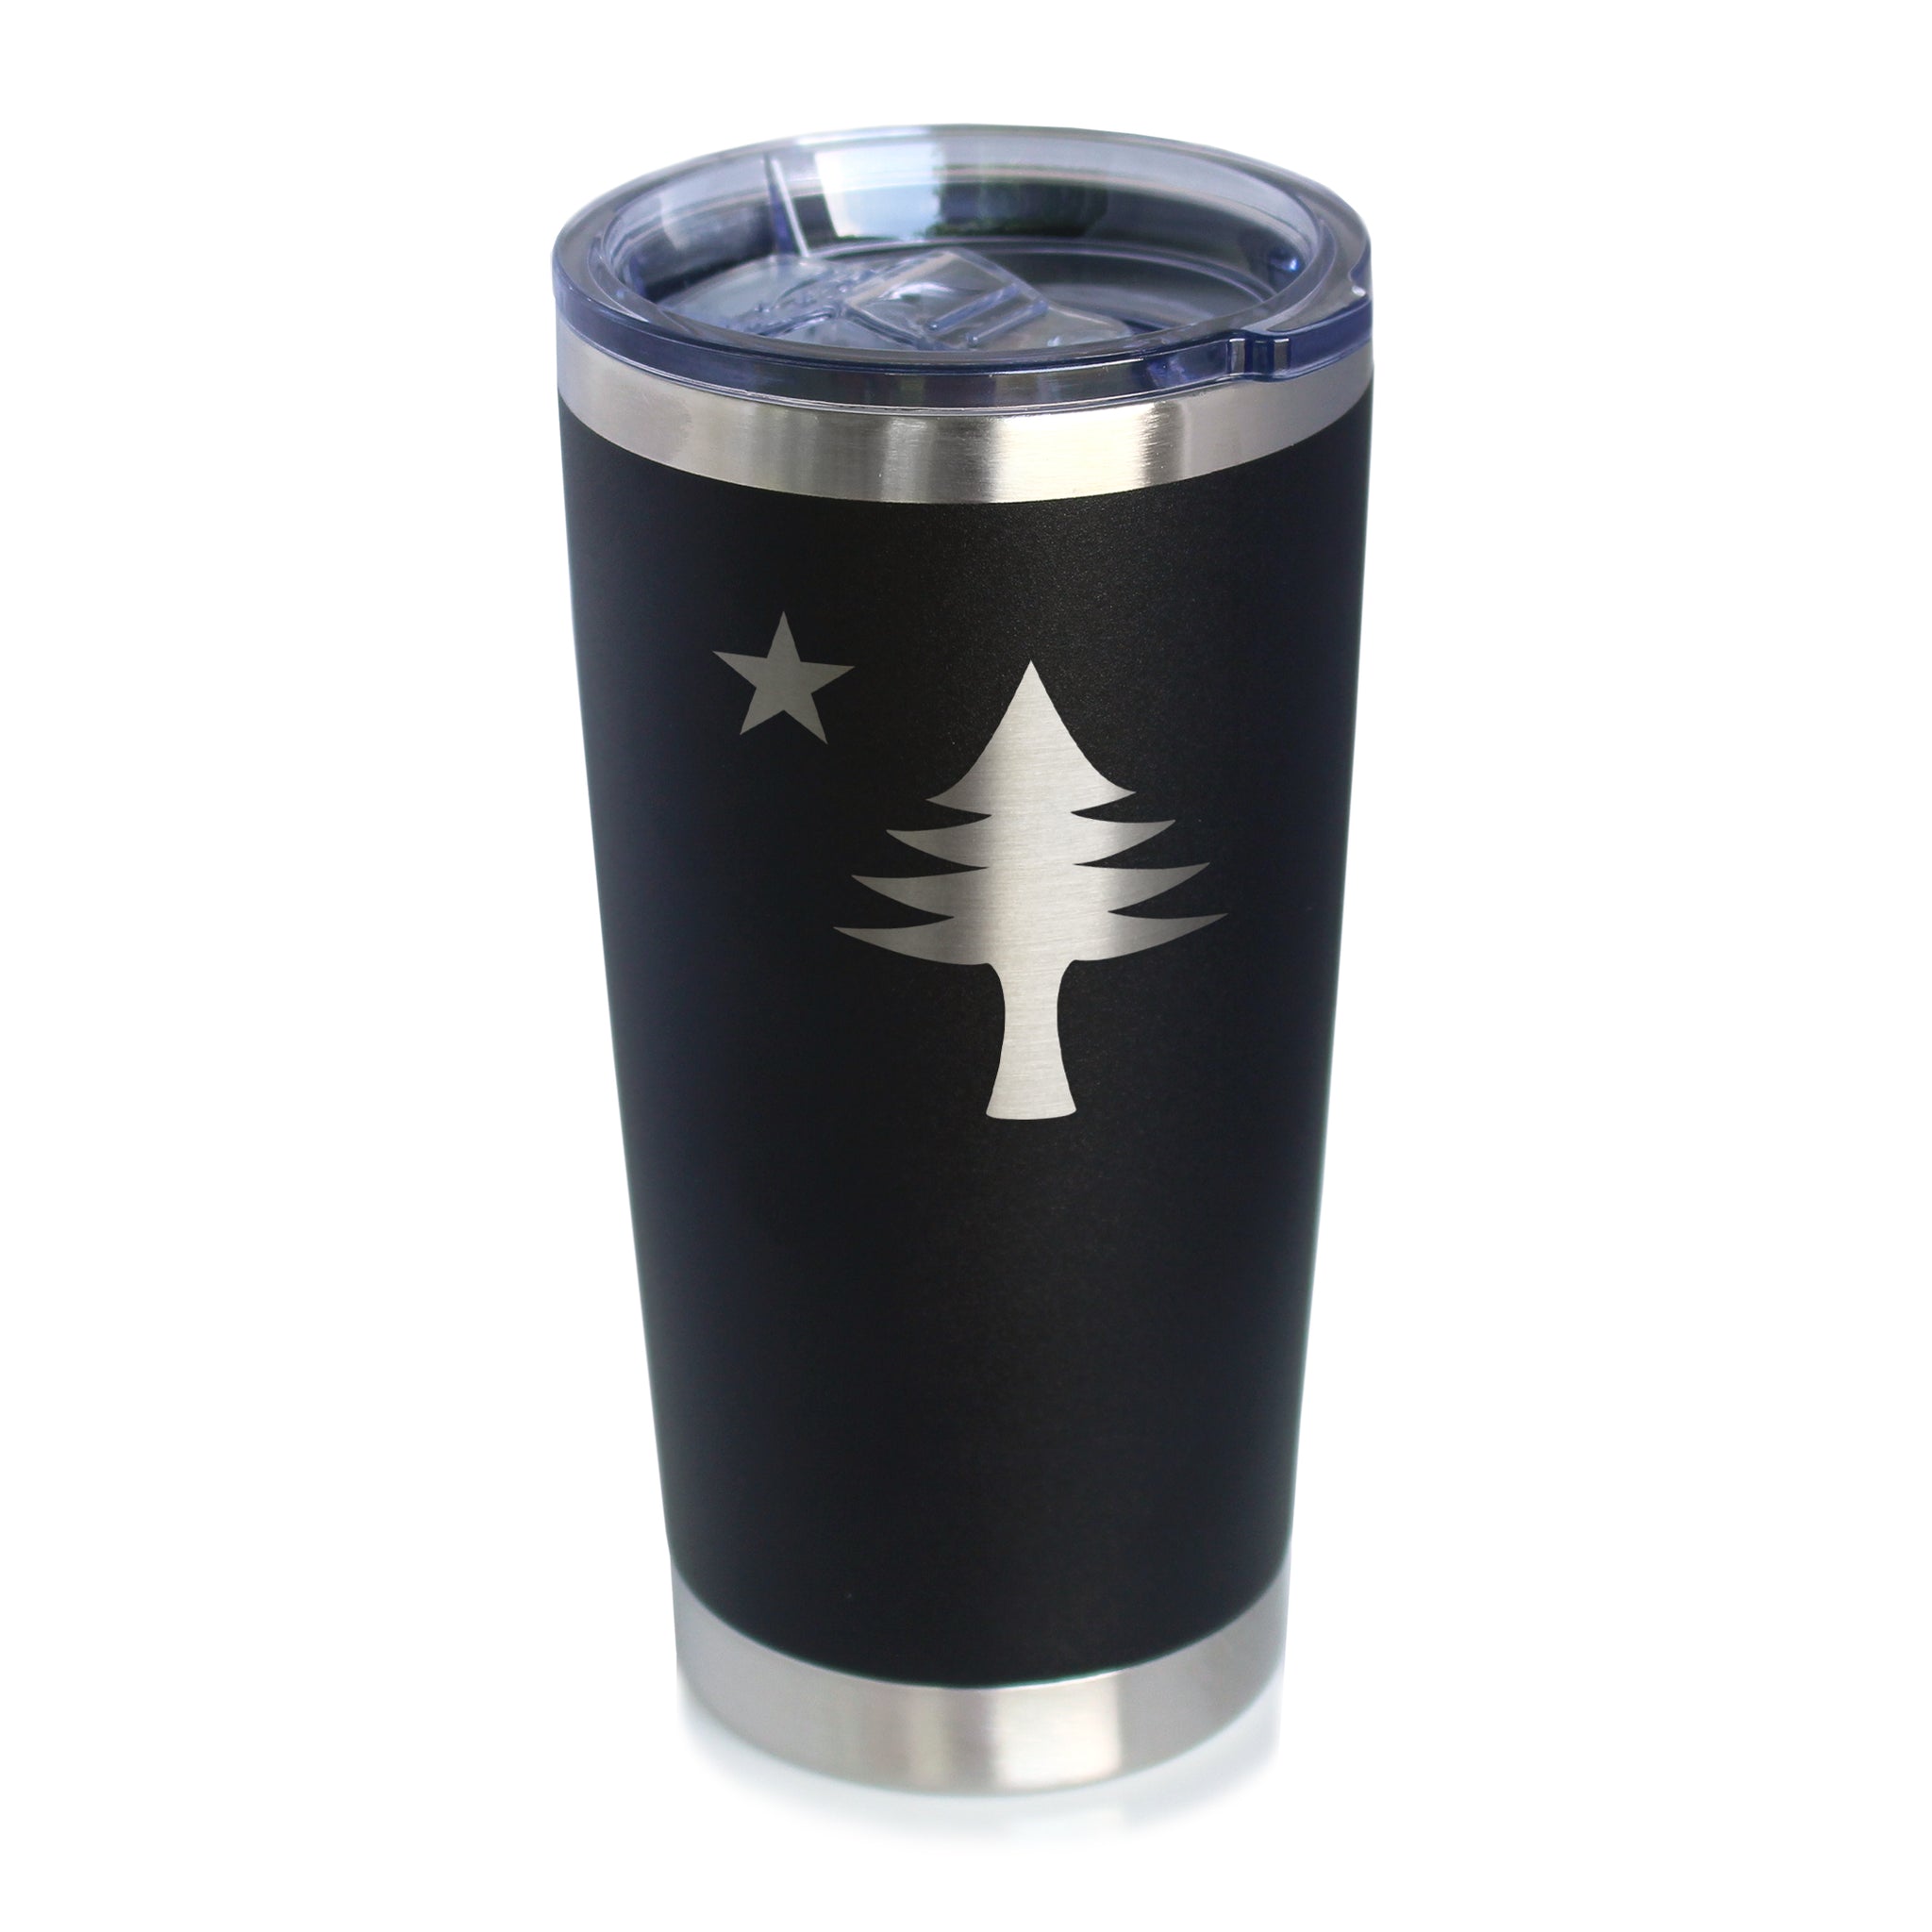 Maine Cup Coffee Mug, Stainless Steel